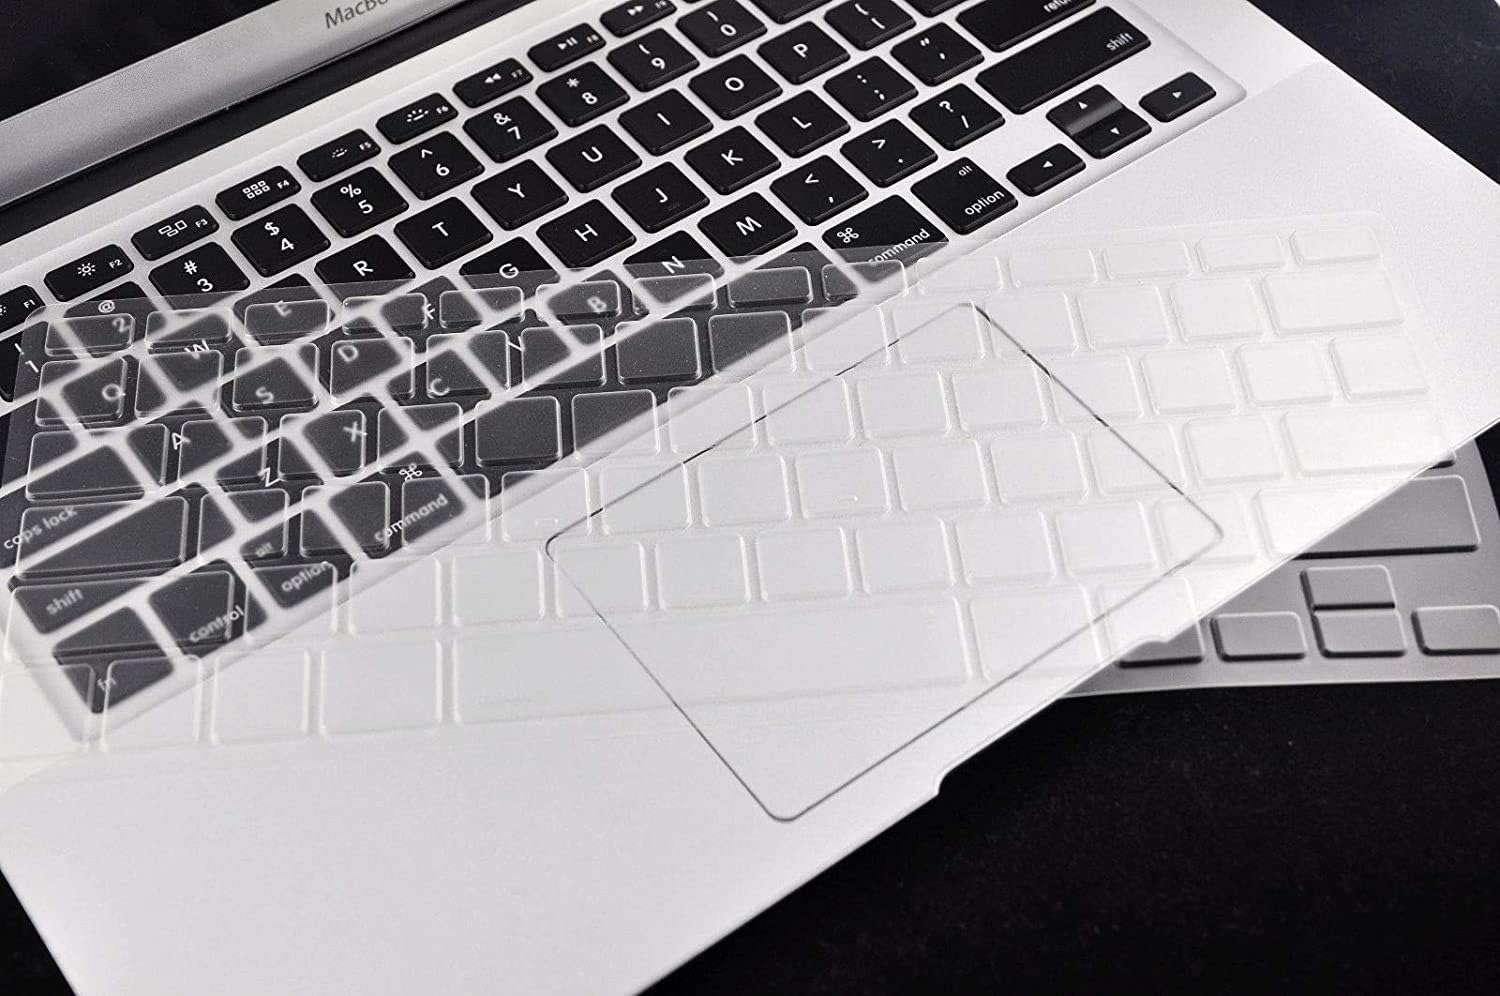 TPU keyboard skin cover for HP EliteBook 820 G3,G4,EliteBook 828 G3,G4,EliteBook 725 G3 G4 Notebook PC